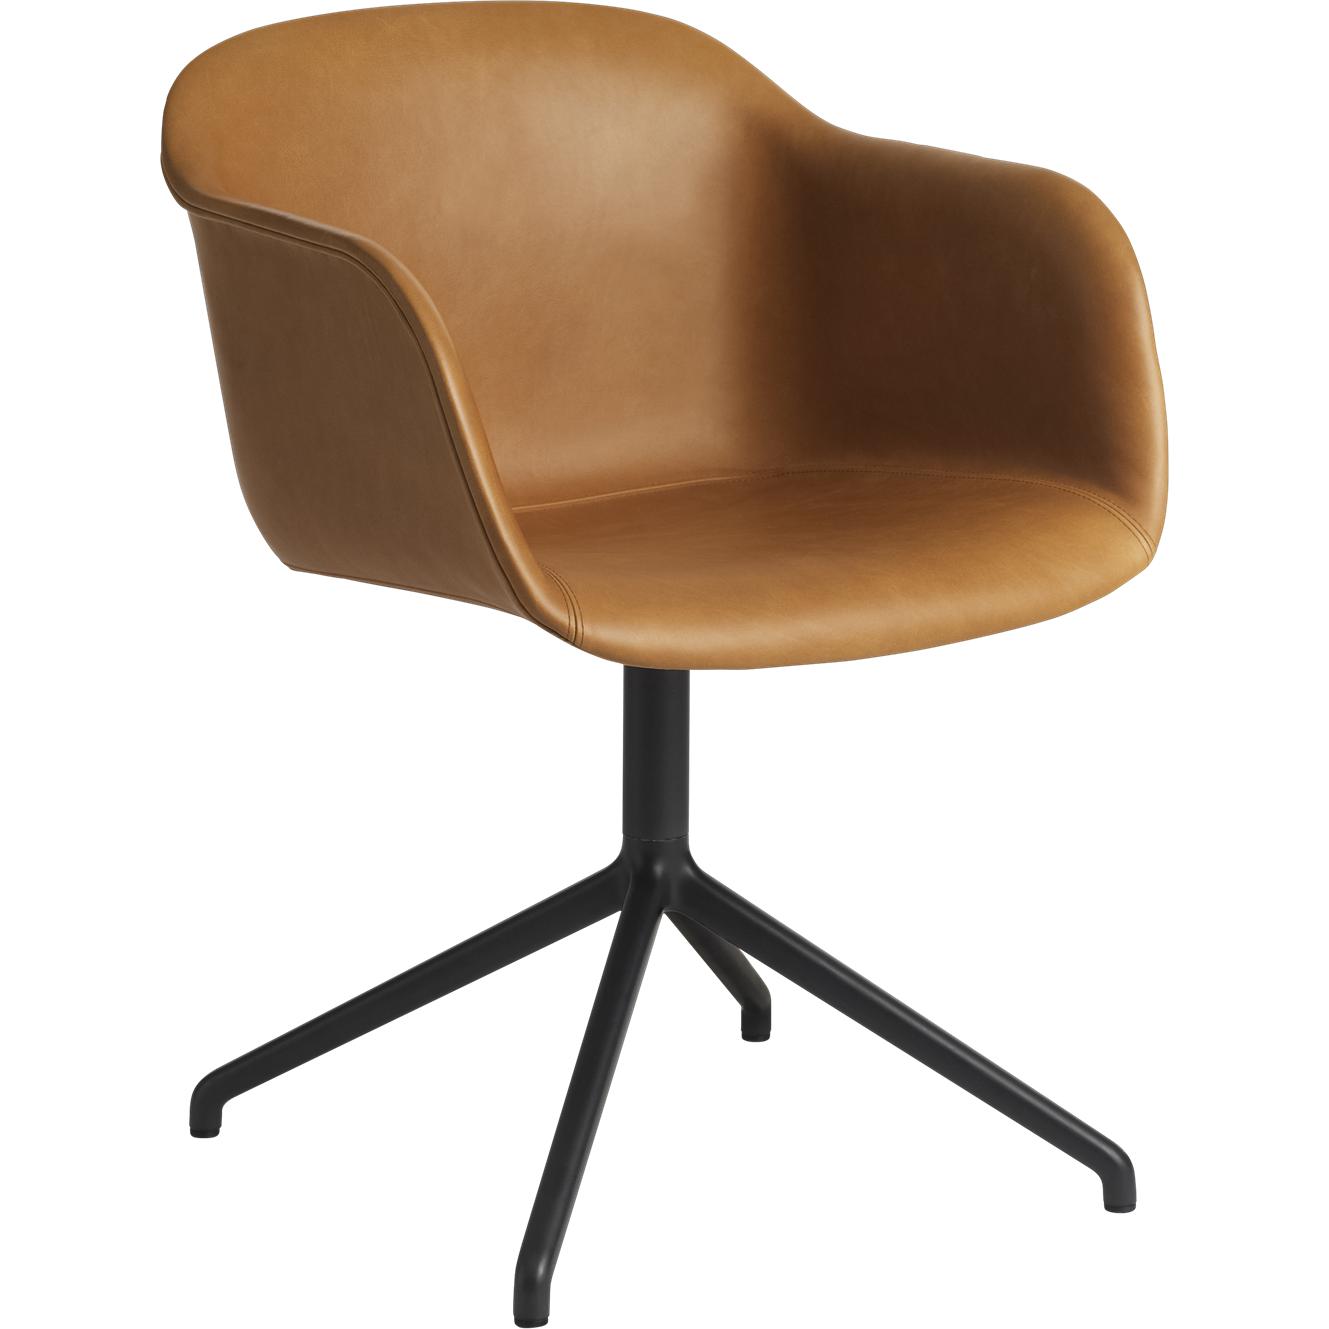 Base giratoria de sillón de fibra muuto, asiento de cuero refino, coñac marrón